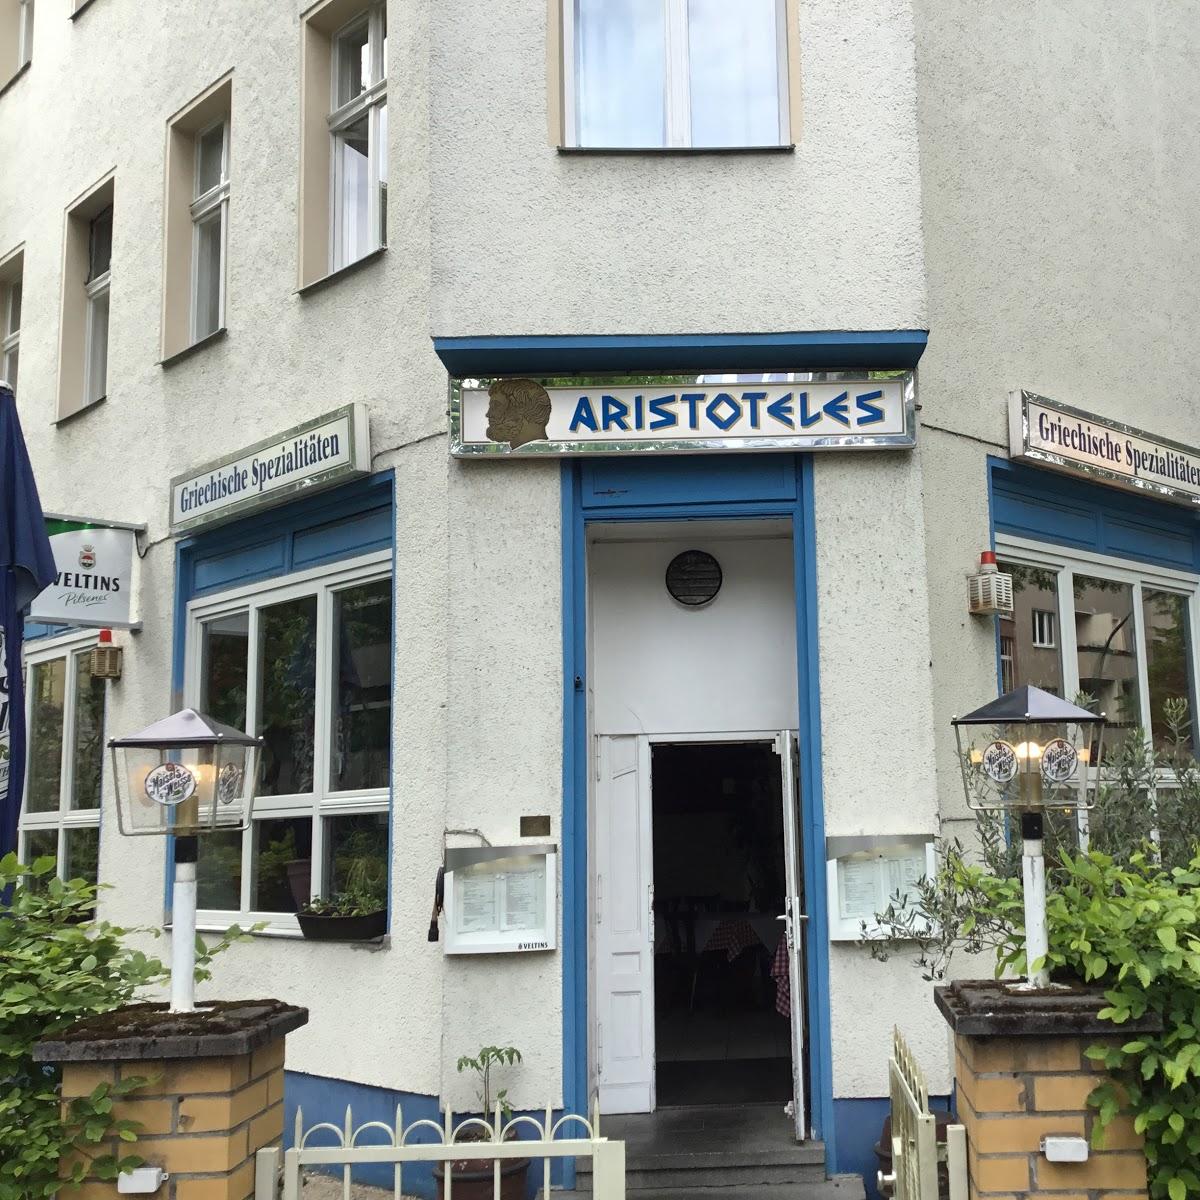 Restaurant Aristoteles